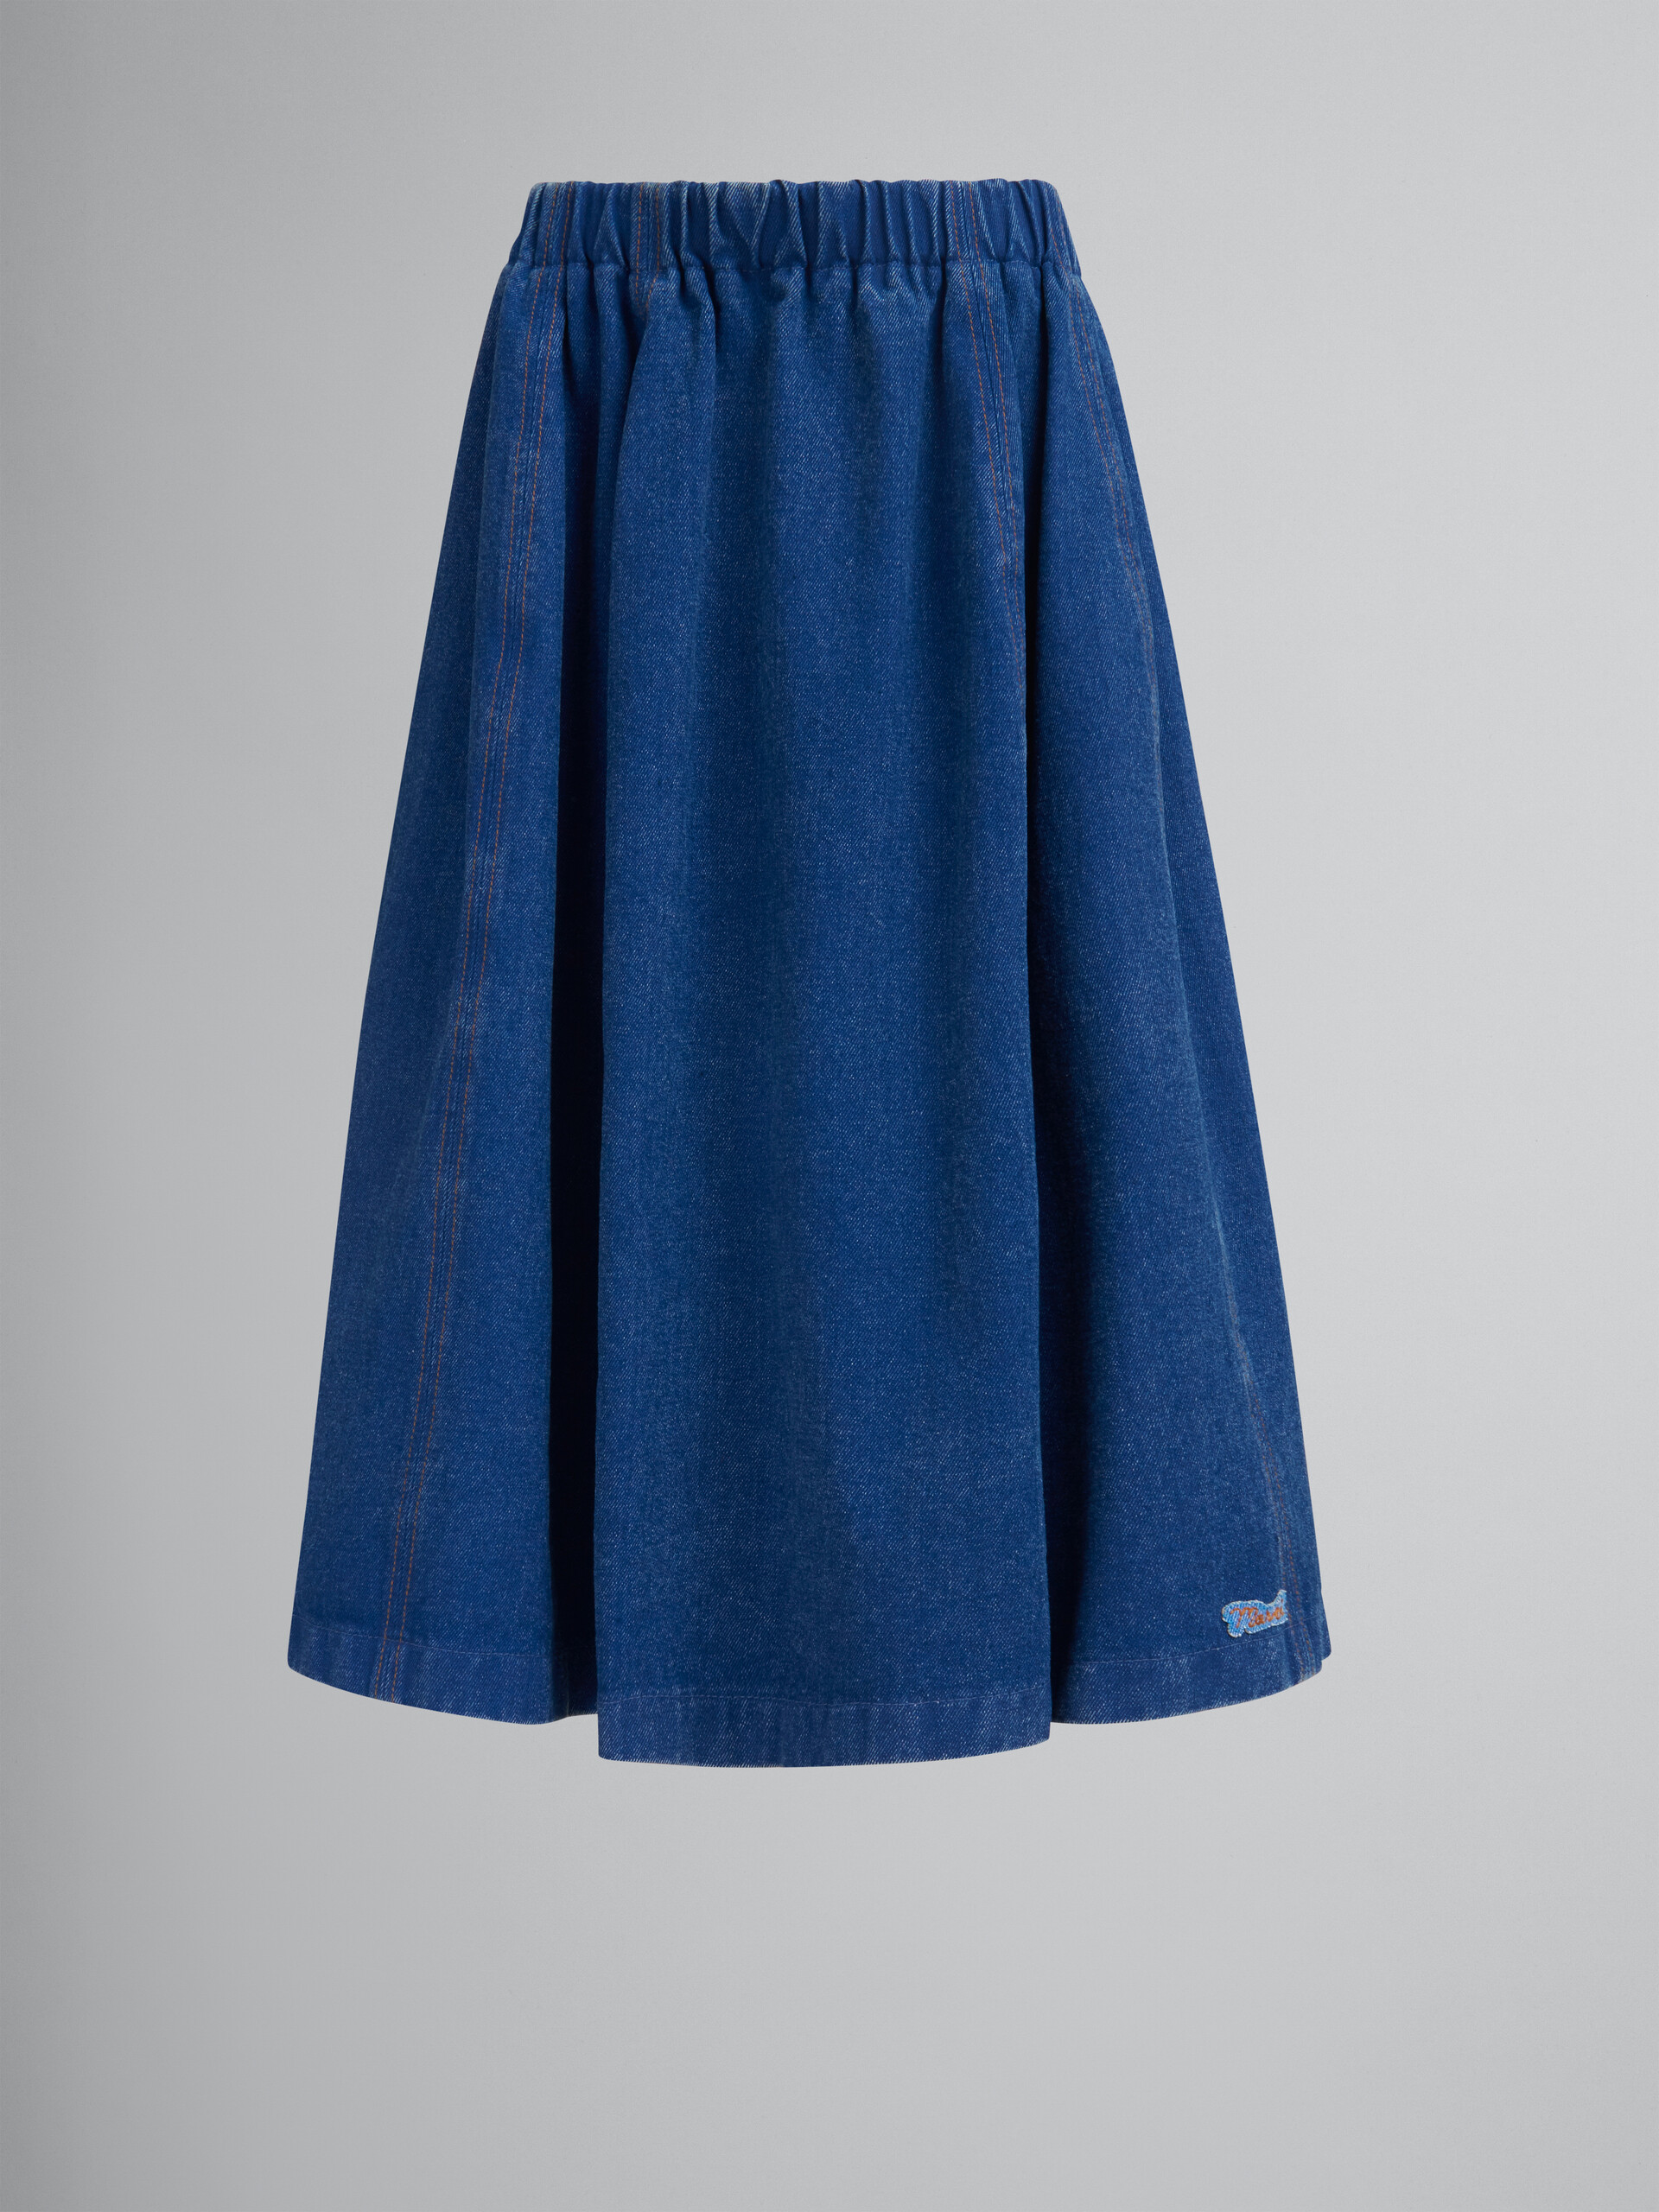 ブルー オーガニックデニム製  伸縮性のあるミディ丈スカート - スカート - Image 1